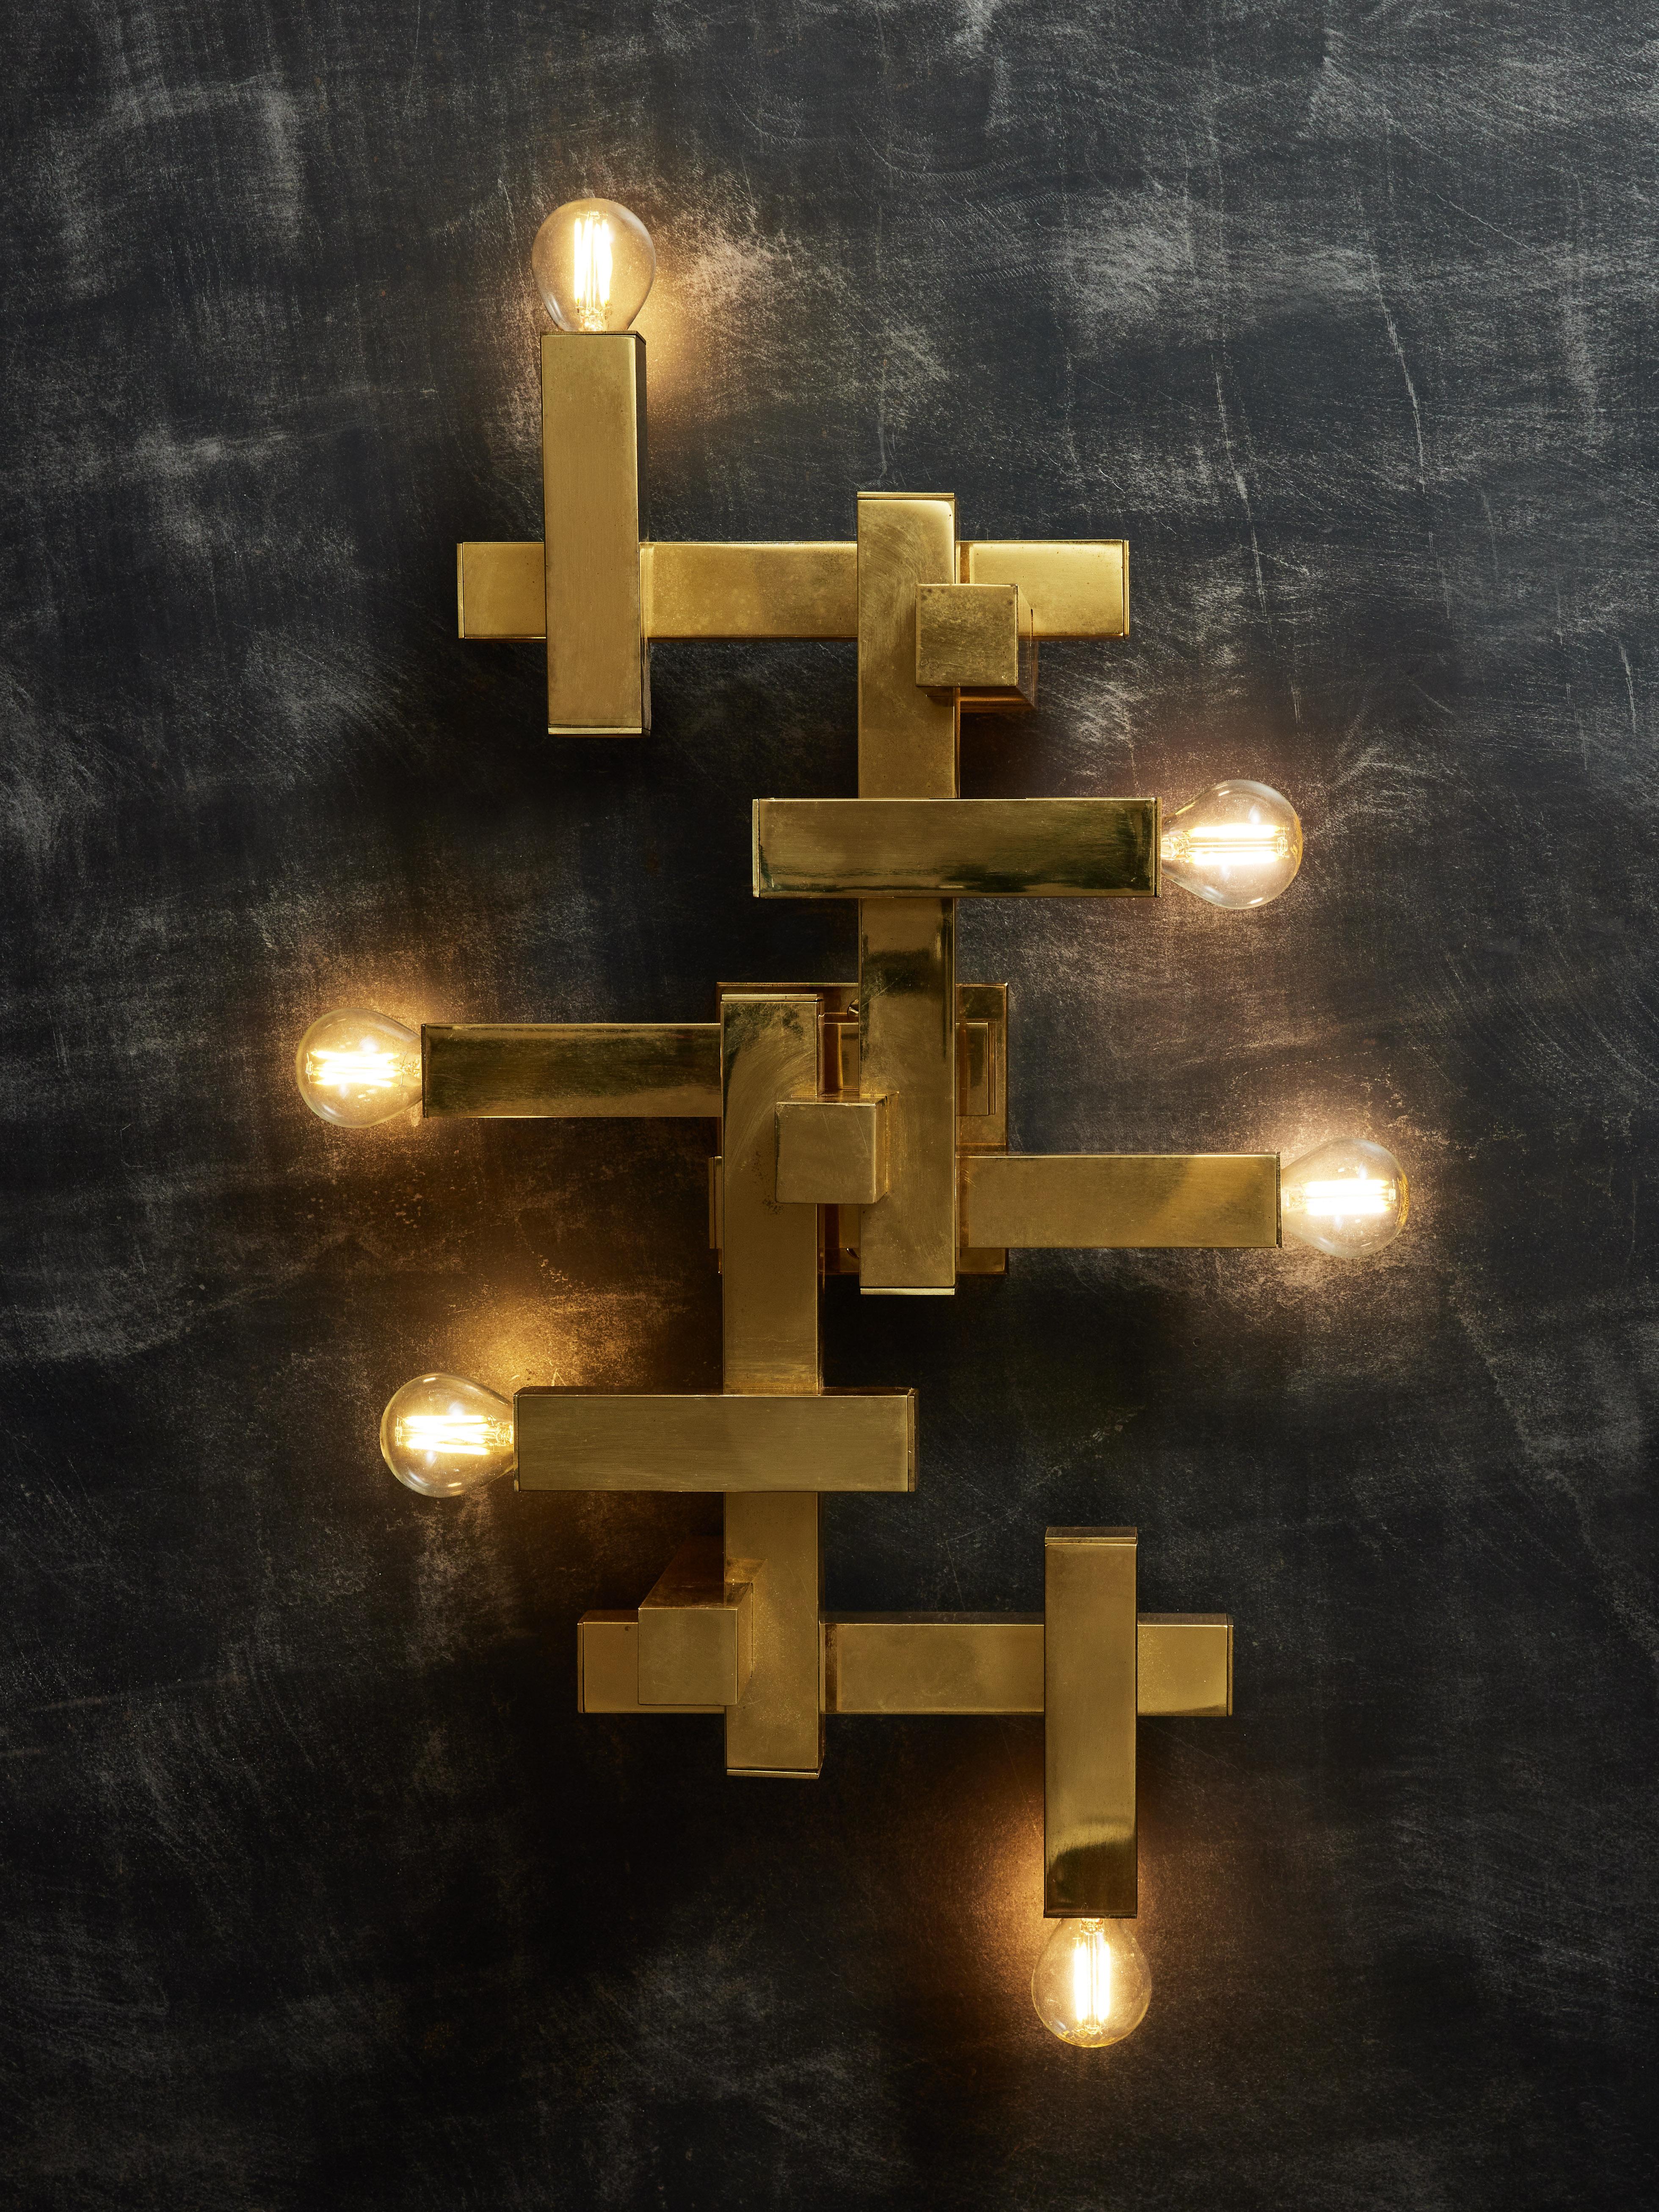 Kubistischer Wandleuchter von Gaetano Sciolari aus geometrisch zusammengesetzten quadratischen Rohren, aus denen sechs Lichtquellen hervorgehen. Kann auch flächenbündig an der Decke befestigt werden.
Original Herstelleraufkleber auf der